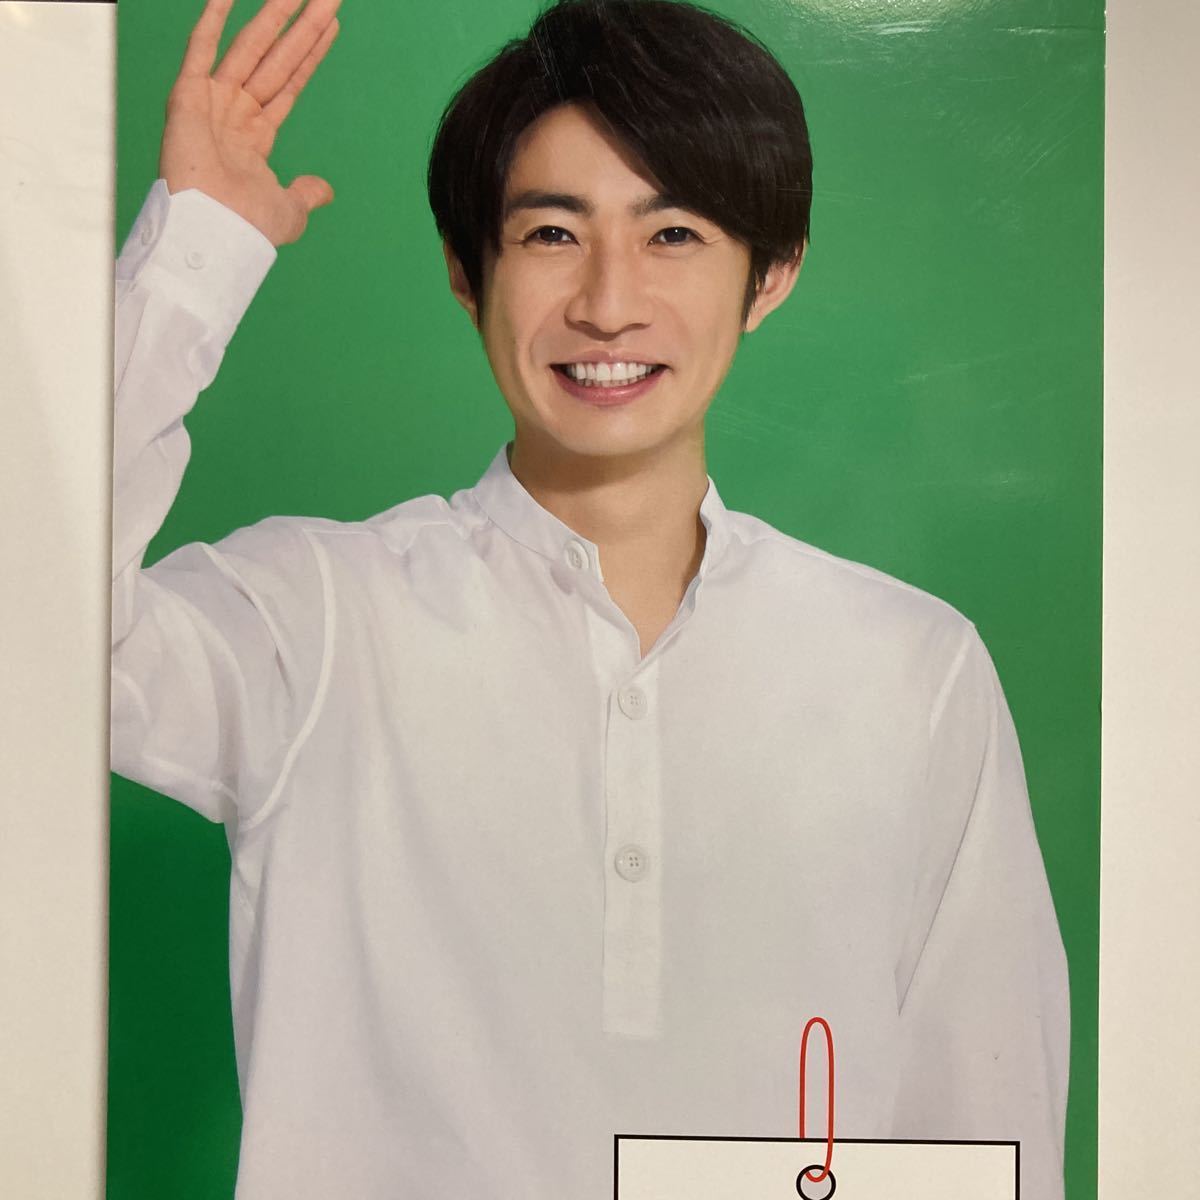 相葉雅紀 MITSUBISHI 三菱 ハローハピネス 販促 ポップ ボード パネル　105cm × 46.5cm